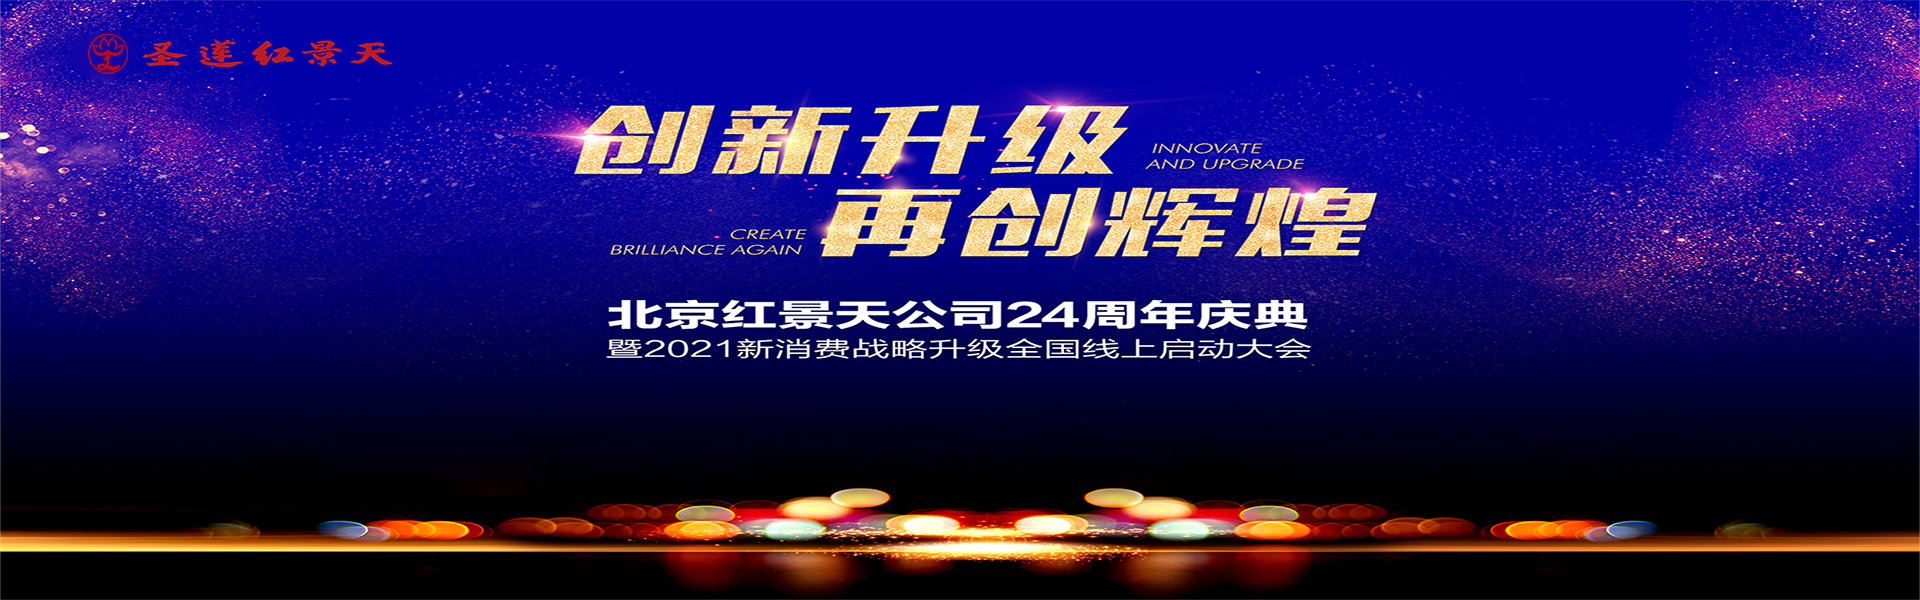 北京紅景天公司24周年慶典